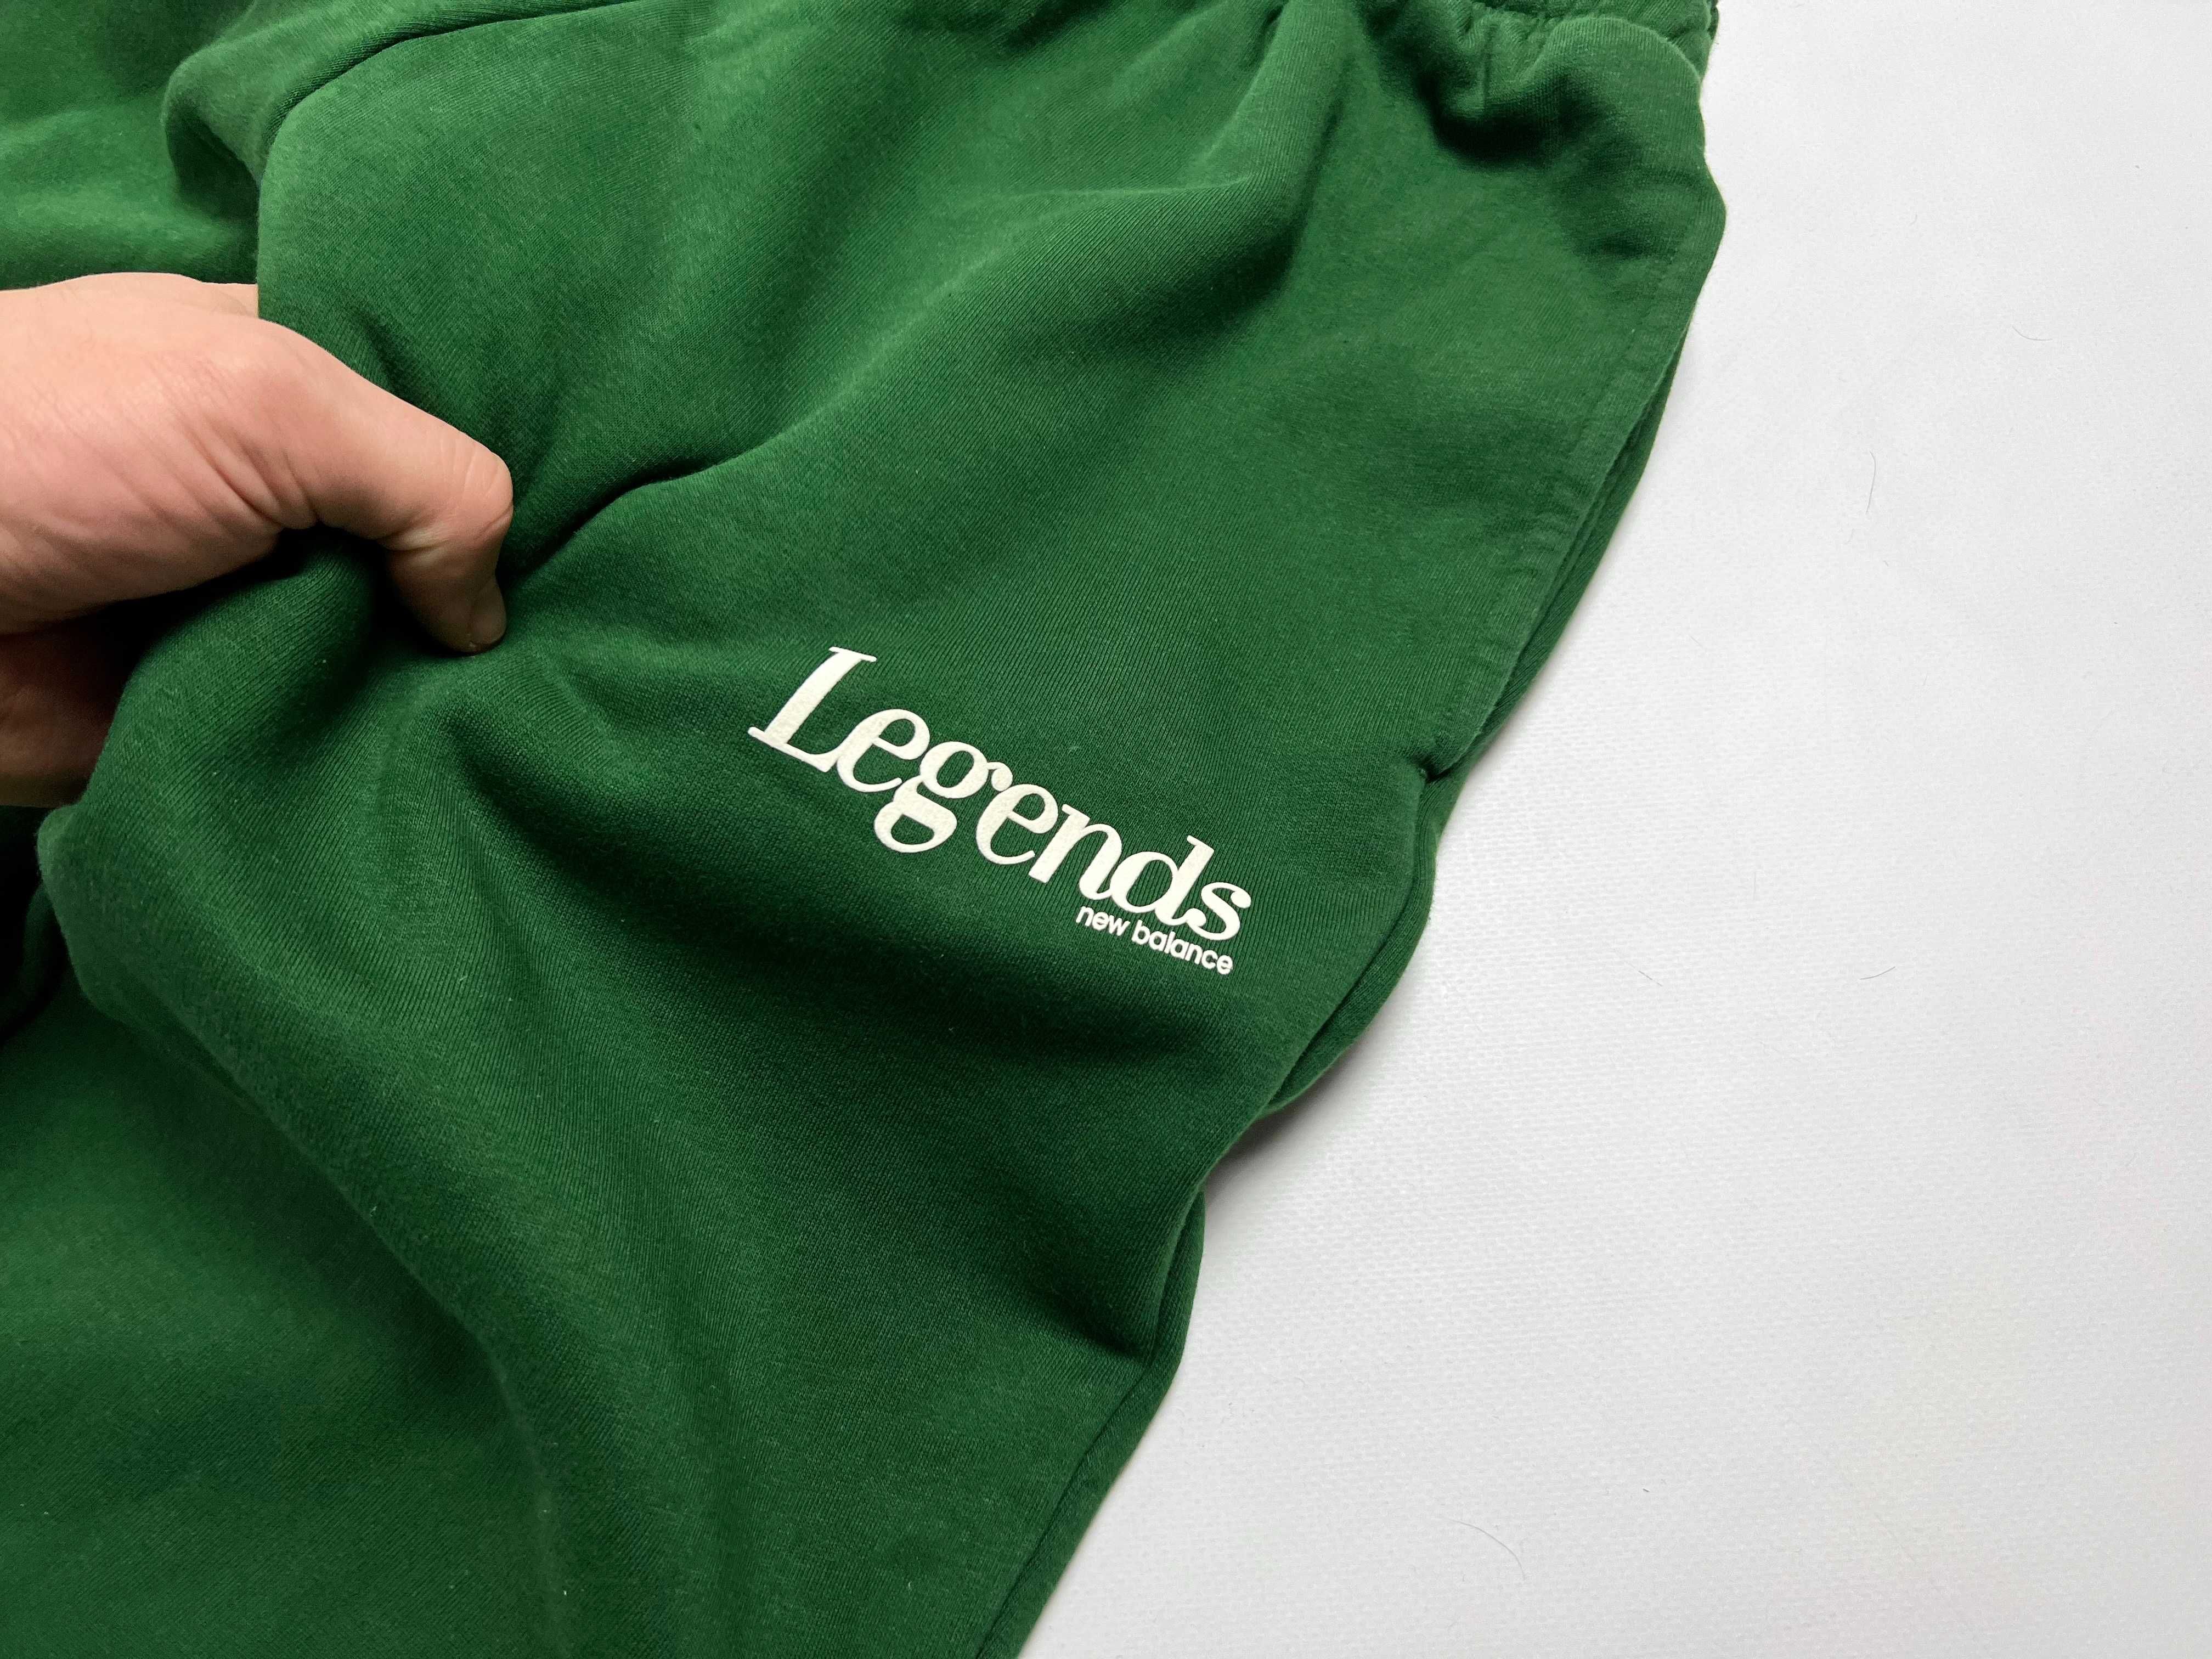 Теплый спортивный костюм New Balance Legends - S/M - куртка